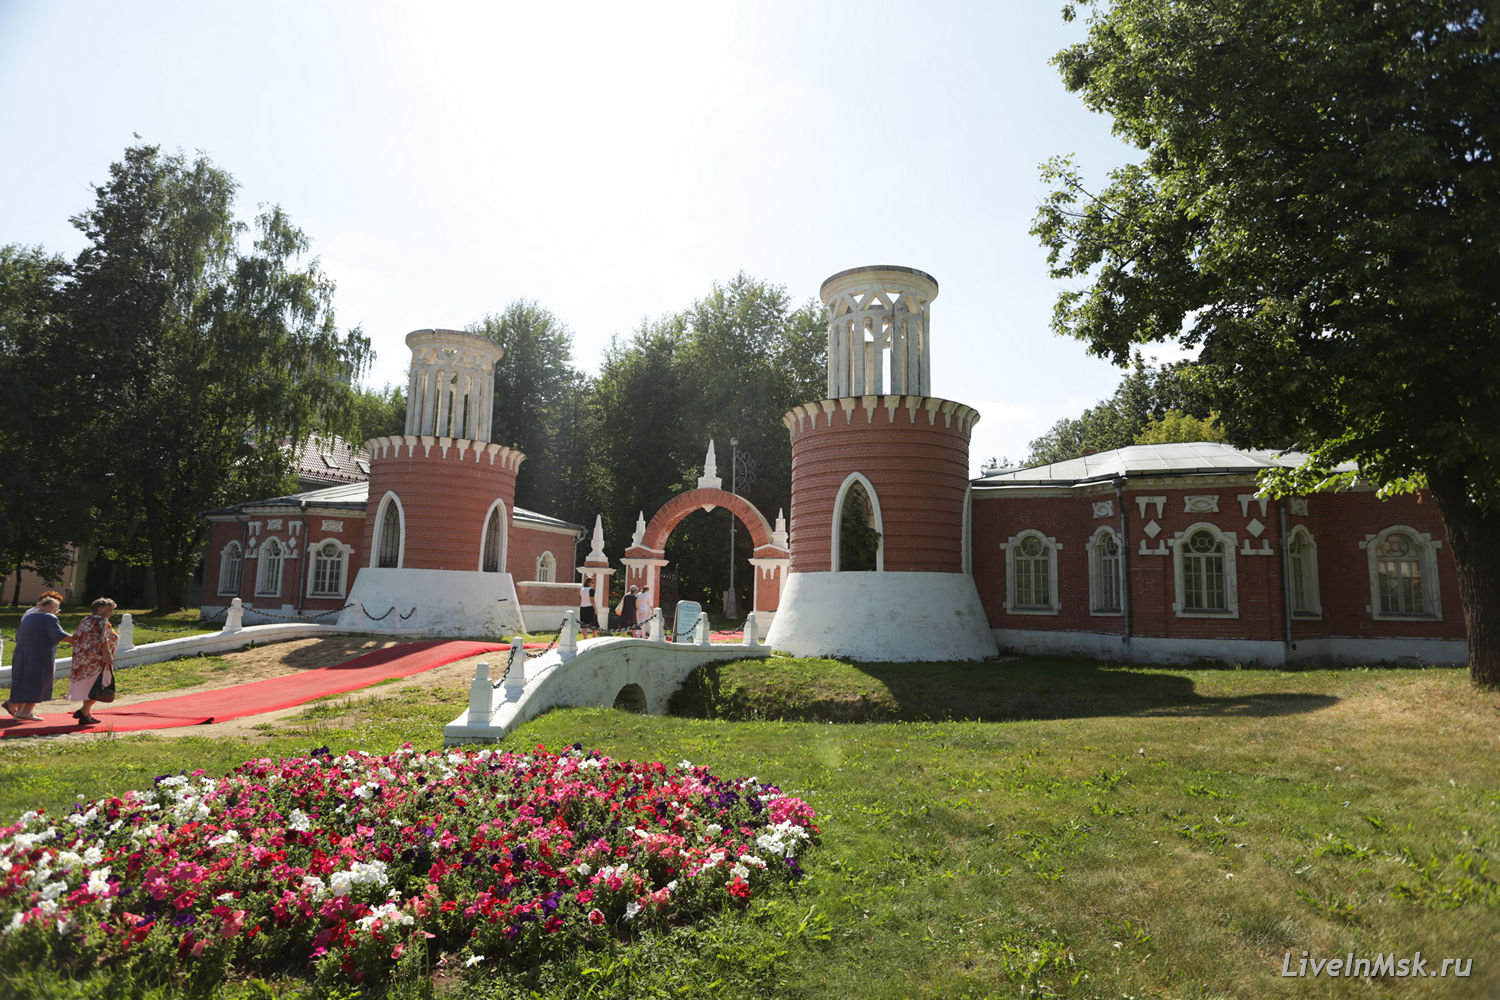 Воронцовский парк, фото 2015 года